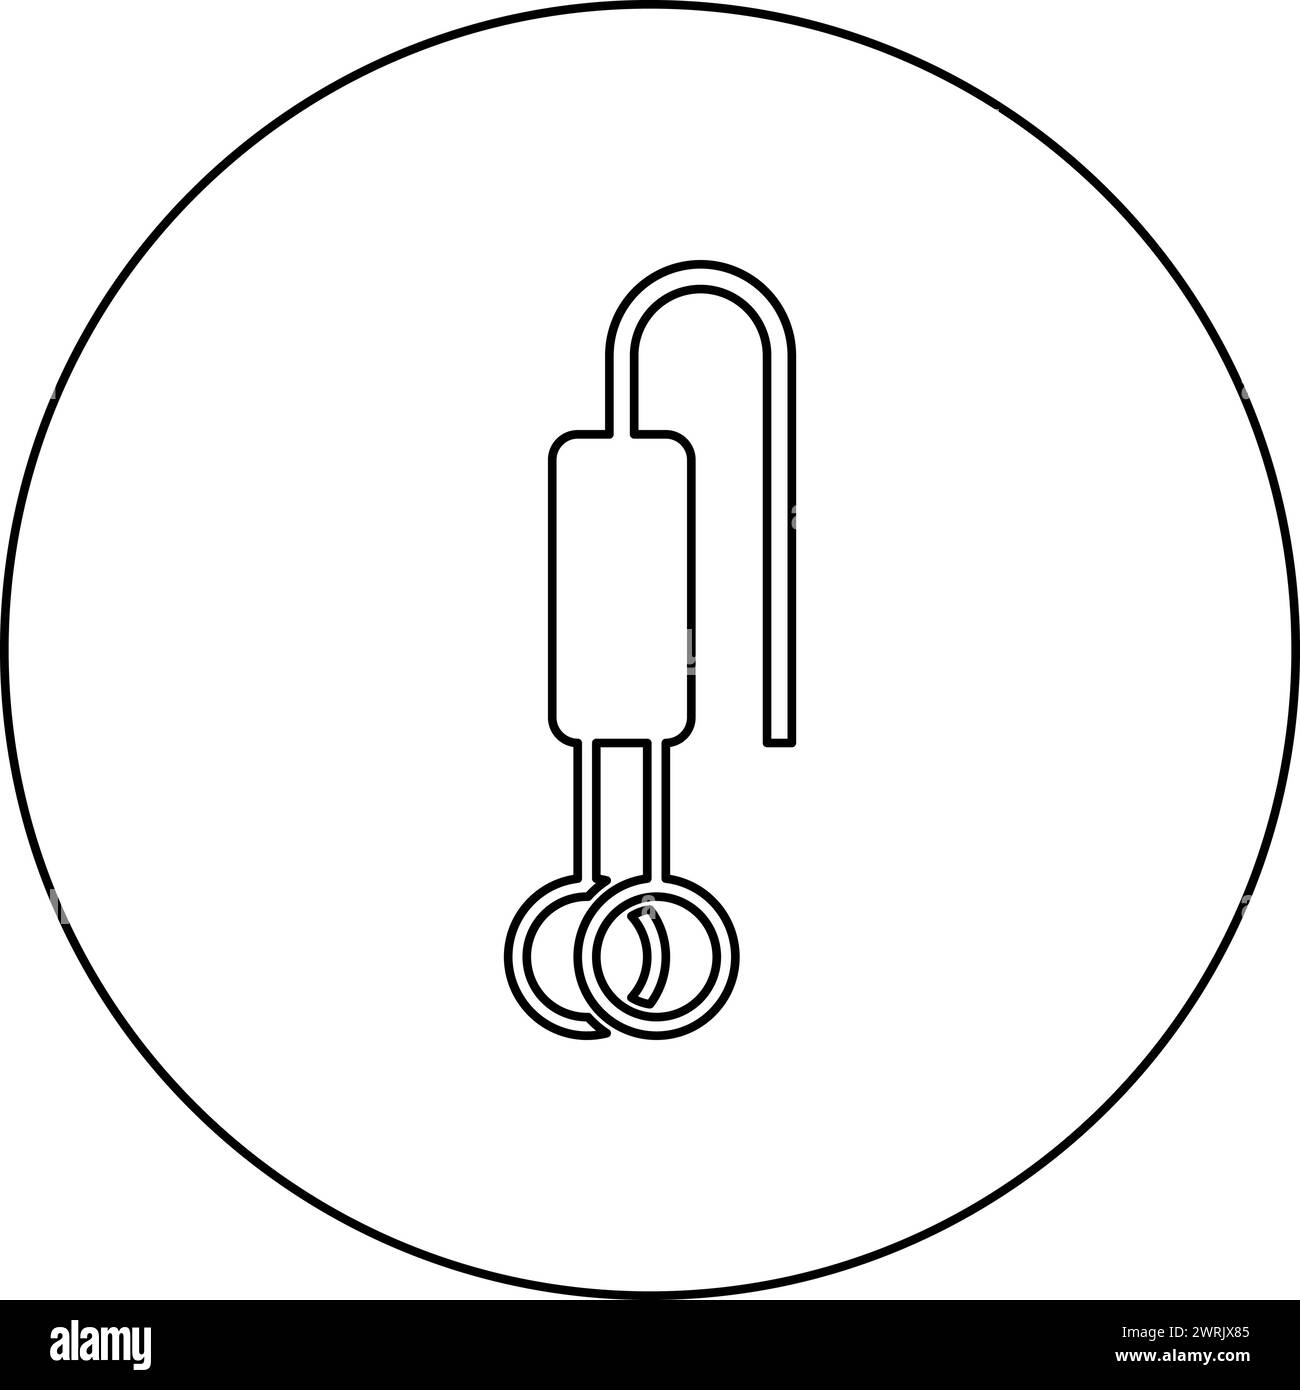 Thermoplongeur électrique pour l'icône de l'eau en cercle rond couleur noire illustration vectorielle d'image contour ligne de contour mince style simple Illustration de Vecteur